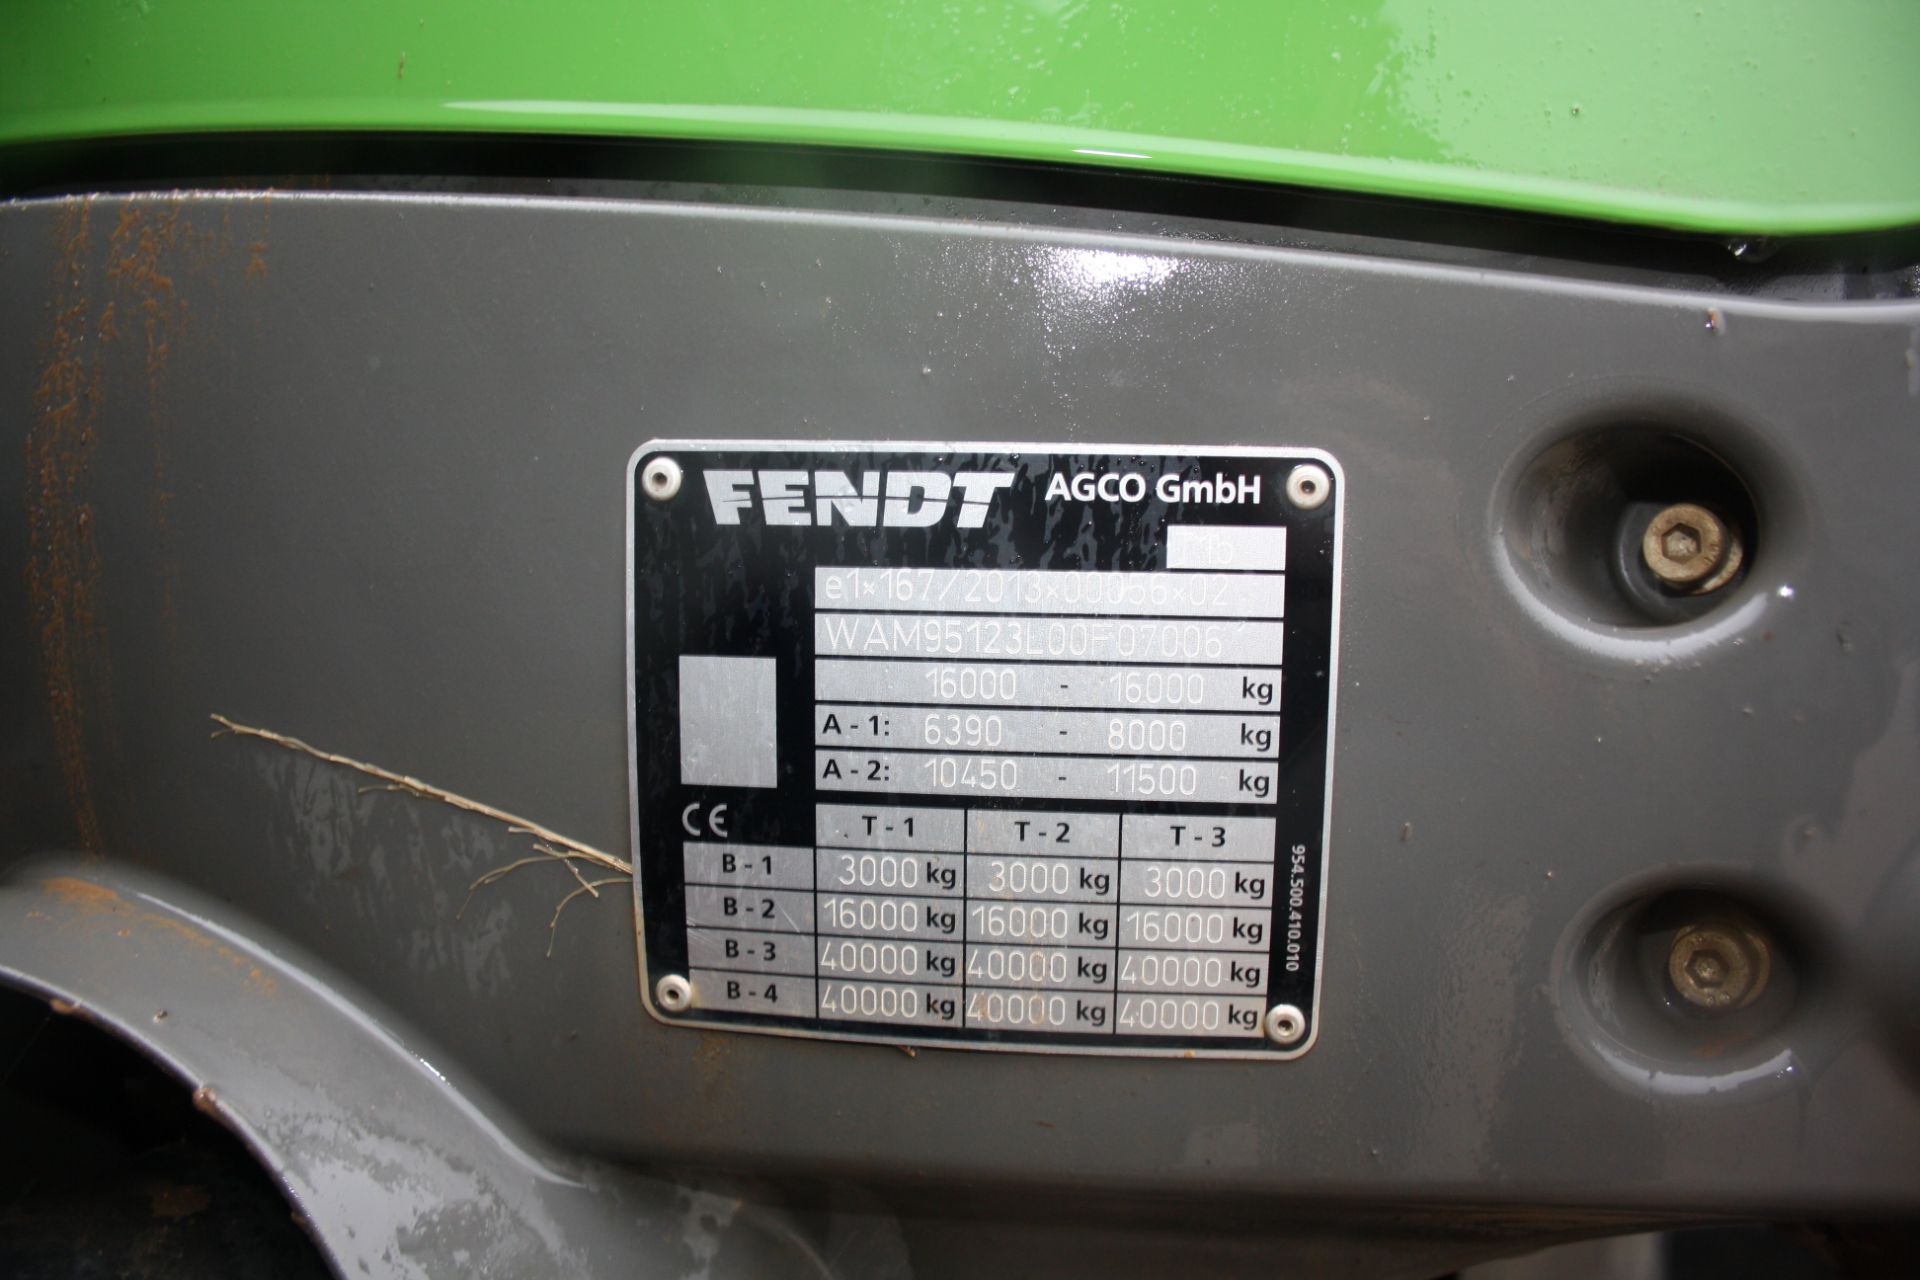 (19) Fendt 930 Vario S4 Profiplus, 60kph 4WD tractor - Image 10 of 18